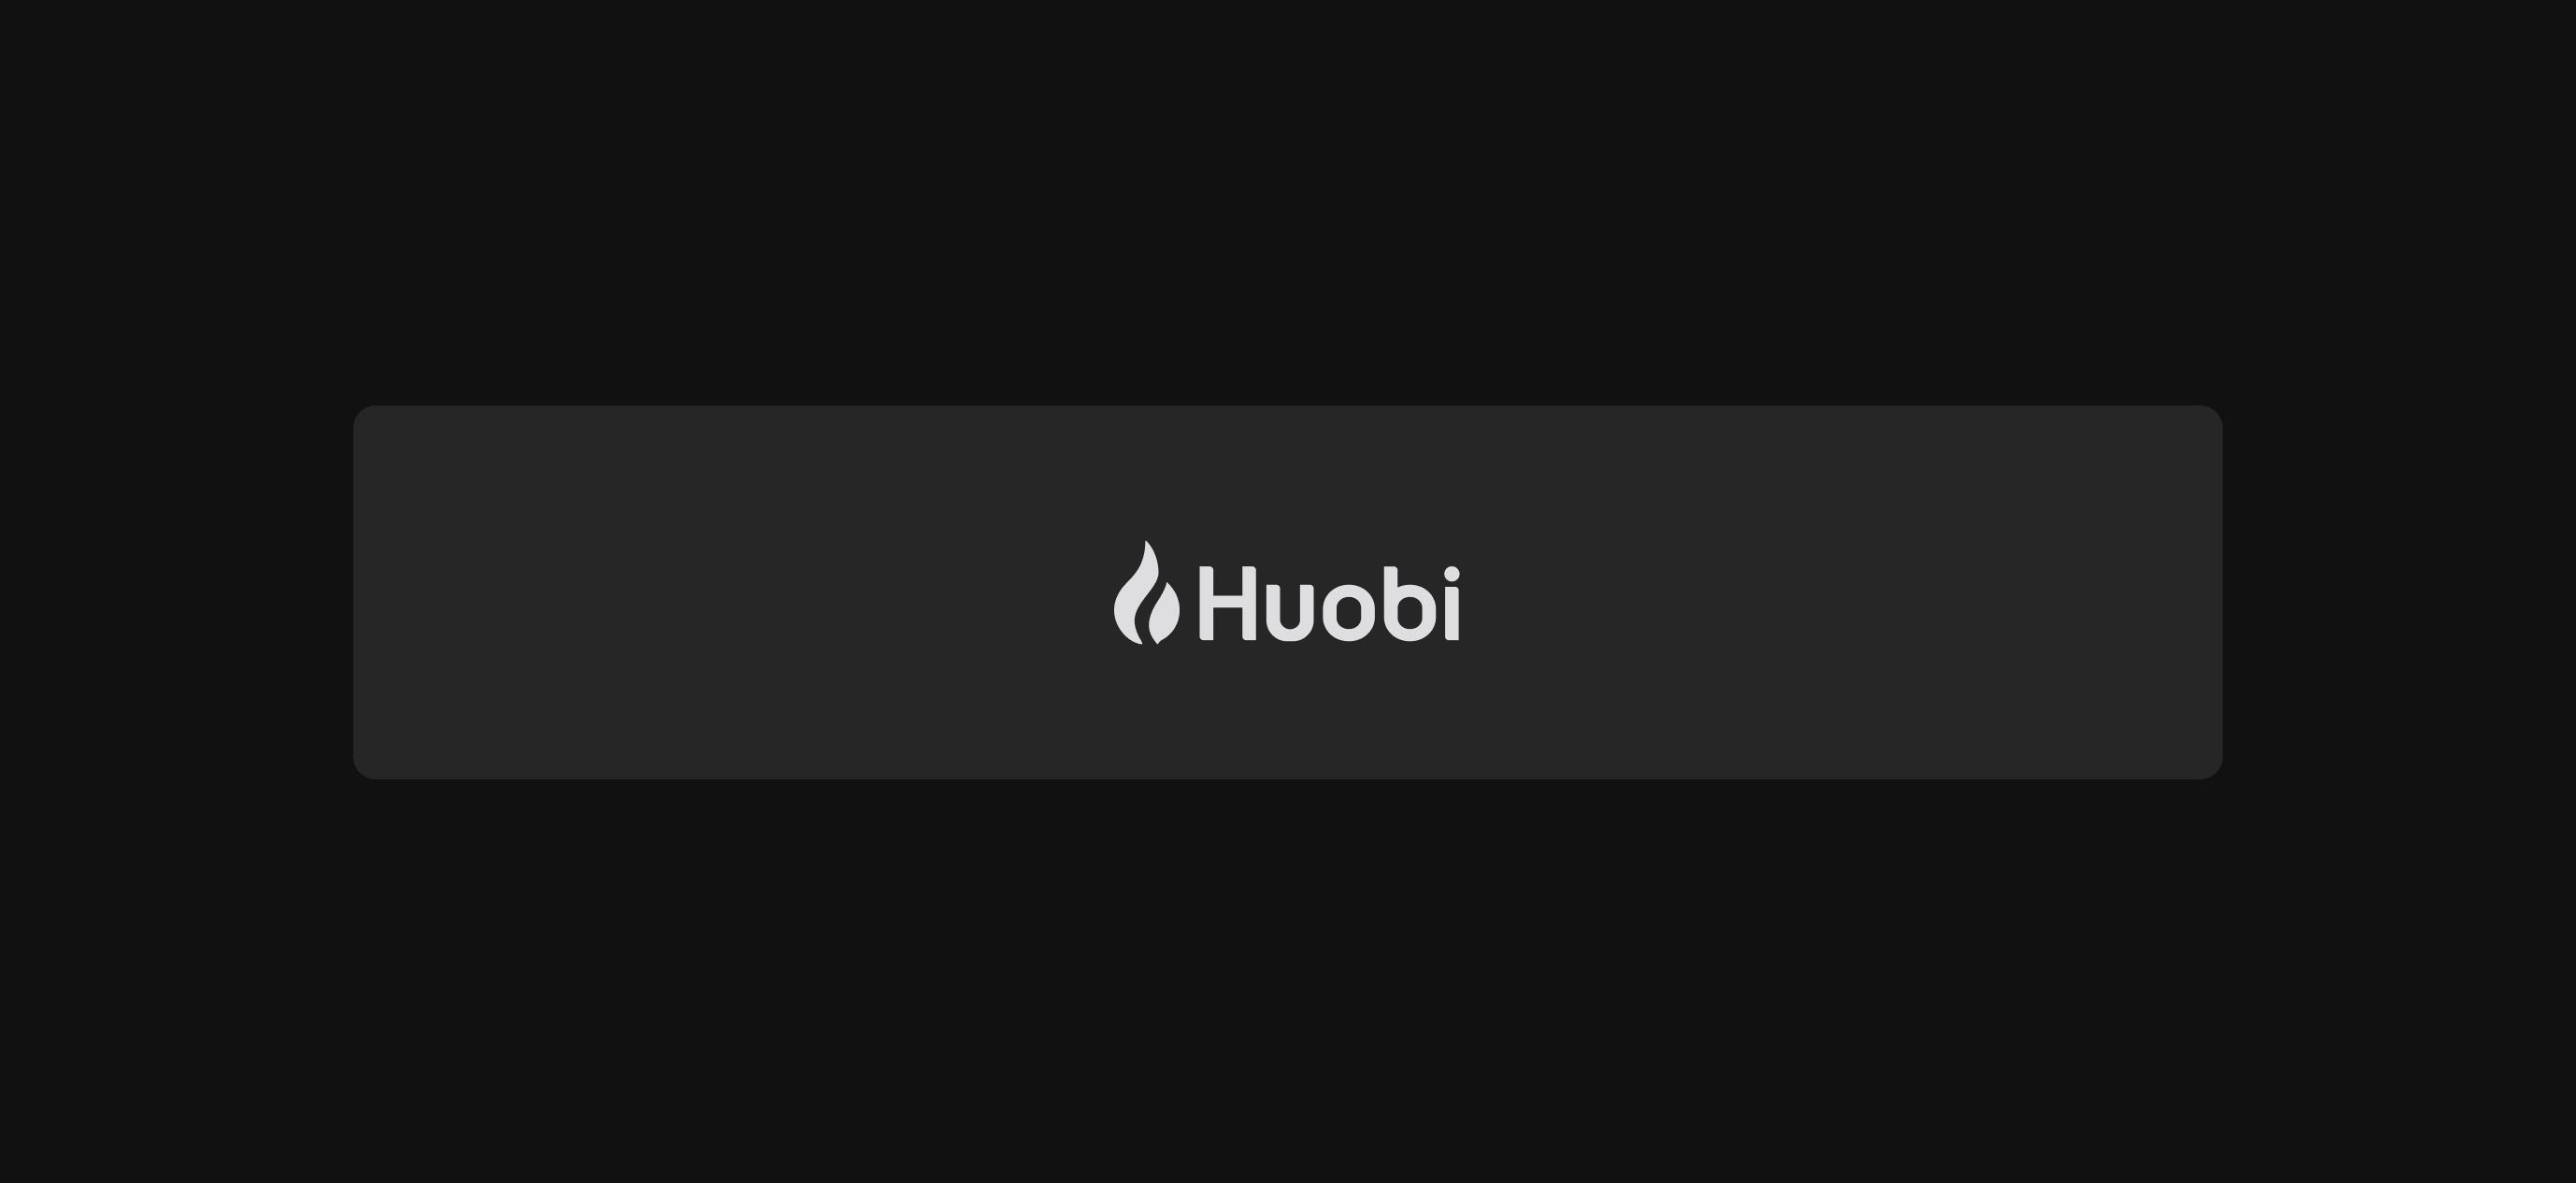 [NOIA/USDT](https://www.huobi.com/en-us/exchange/noia_usd) trading pair on [Huobi](https://www.huobi.com/en-us/)